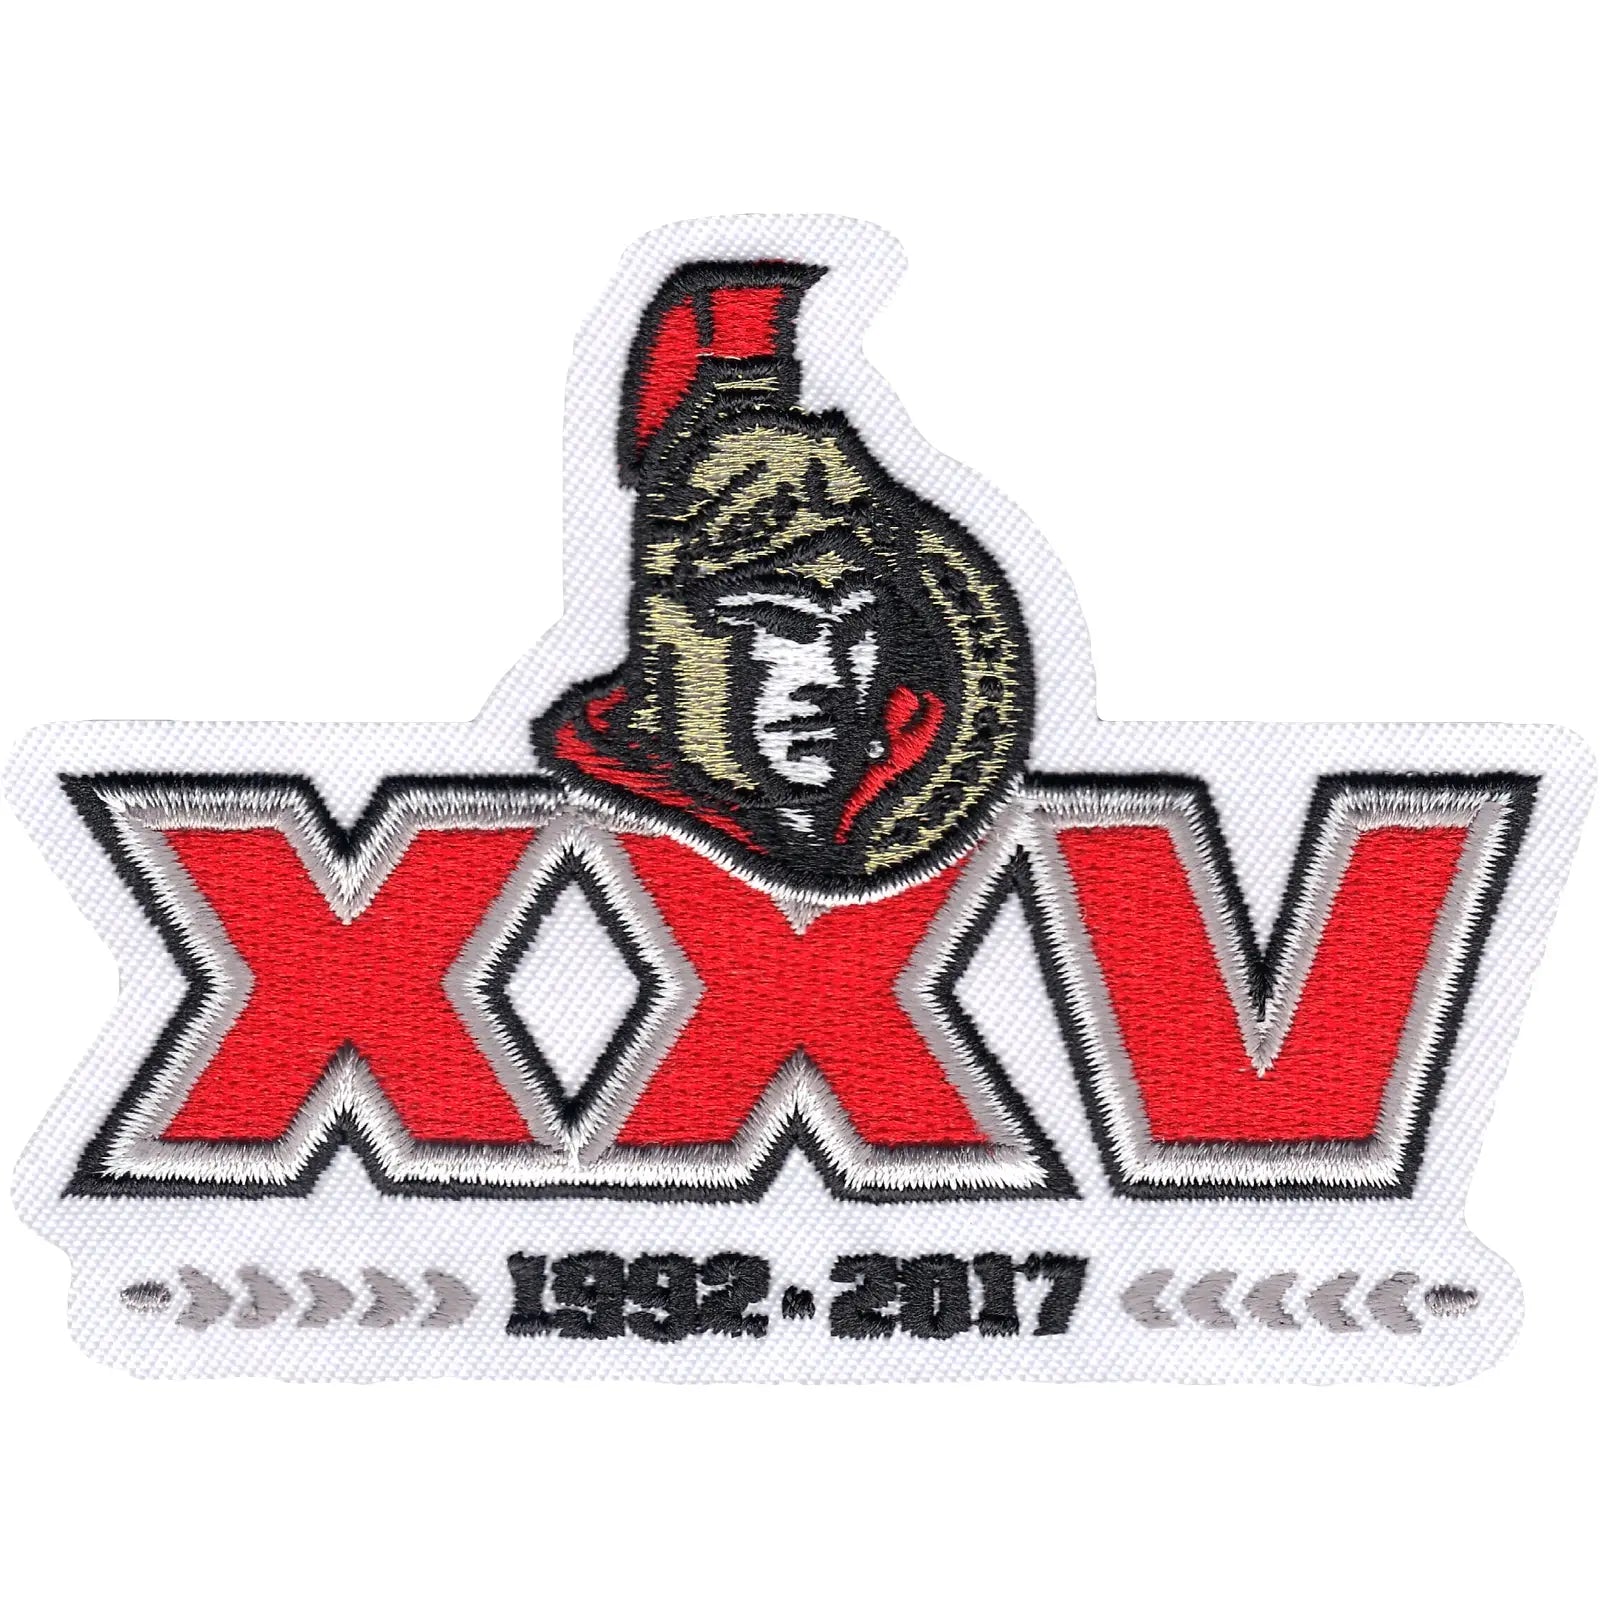 2017 Official Ottawa Senators 25th Anniversary Jersey Patch 